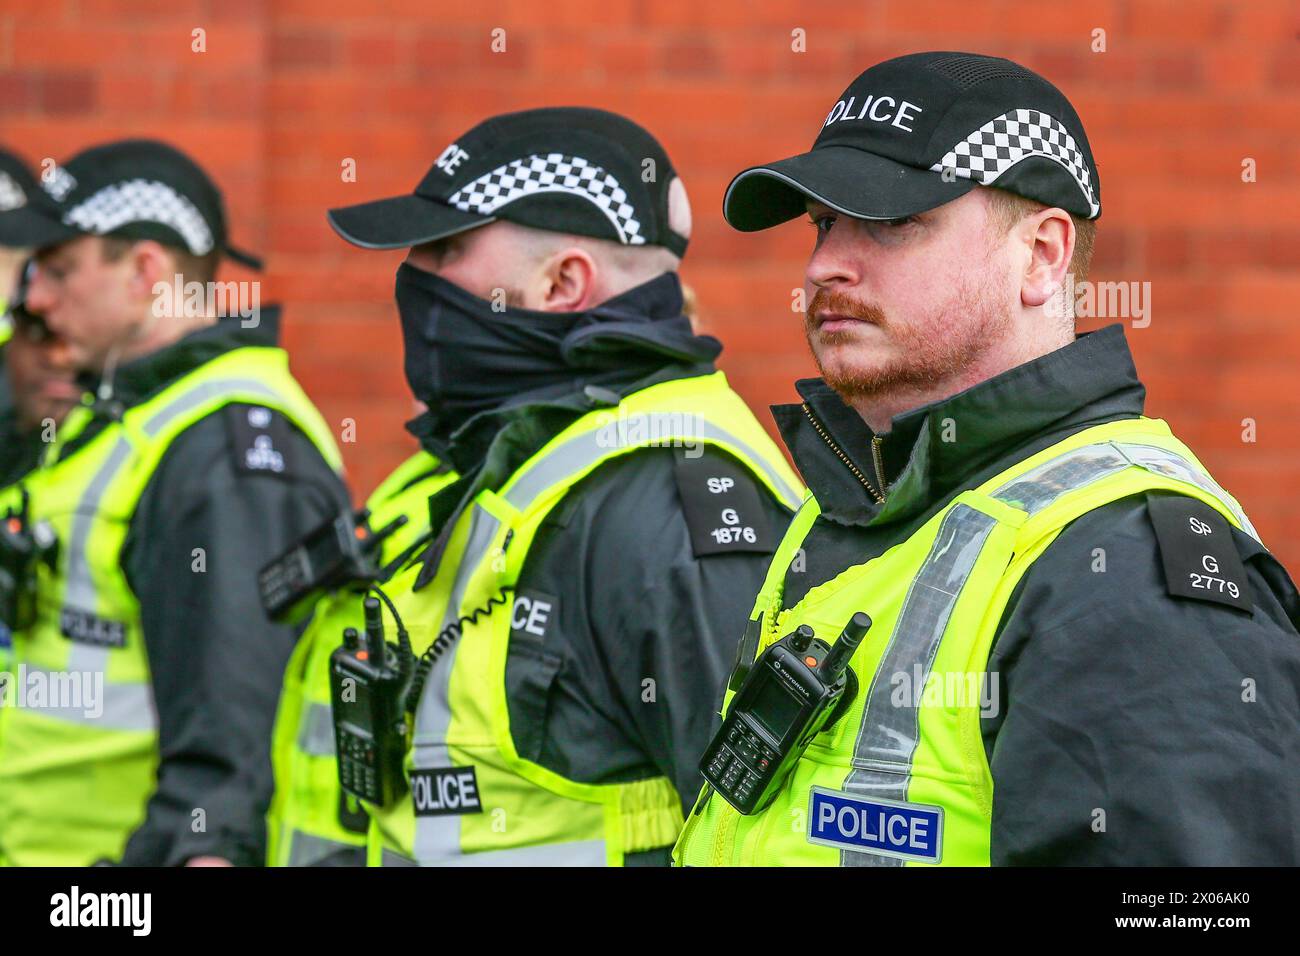 Policiers de police de police Scotland en service, engagés dans le contrôle des foules, lors d'un match de football à Glasgow, Écosse, Royaume-Uni Banque D'Images